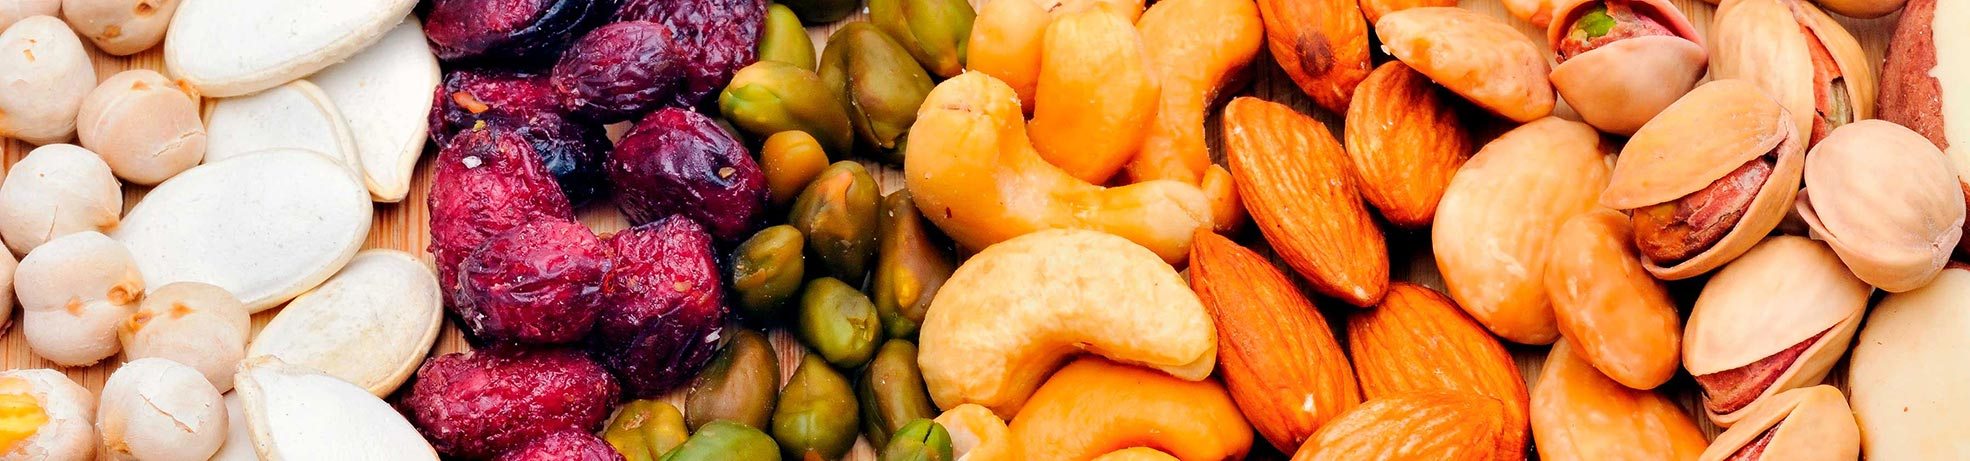 dried fruit, nuts & veggies